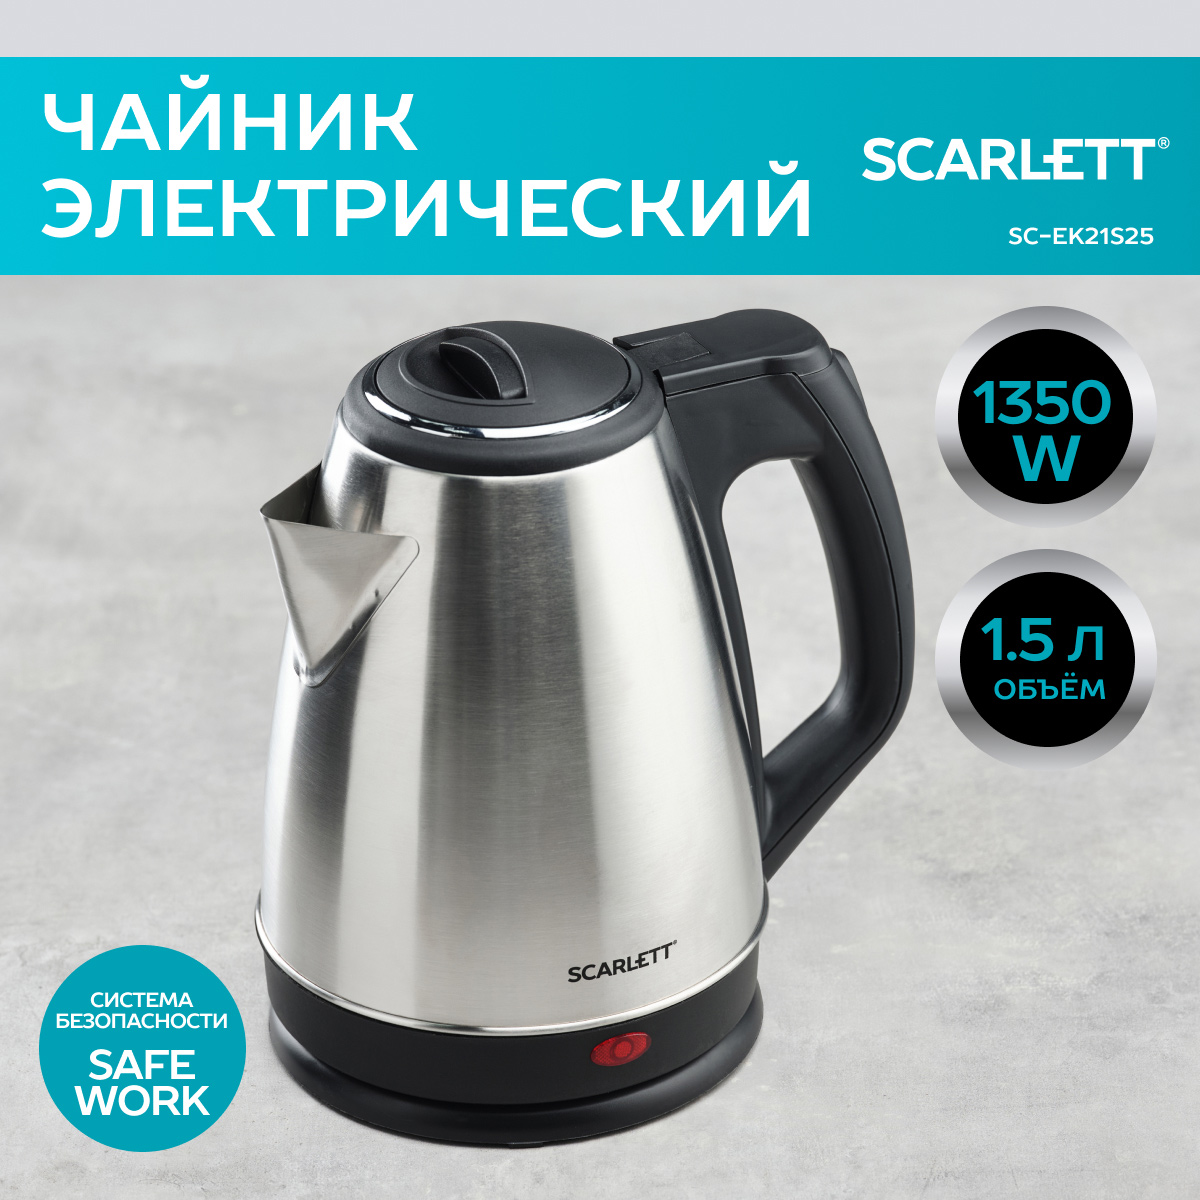 Чайник электрический Scarlett SC-EK21S25 1.5 л серебристый, черный чайник электрический scarlett sc ek21s25 1350 вт серебристый 1 5 л нержавеющая сталь